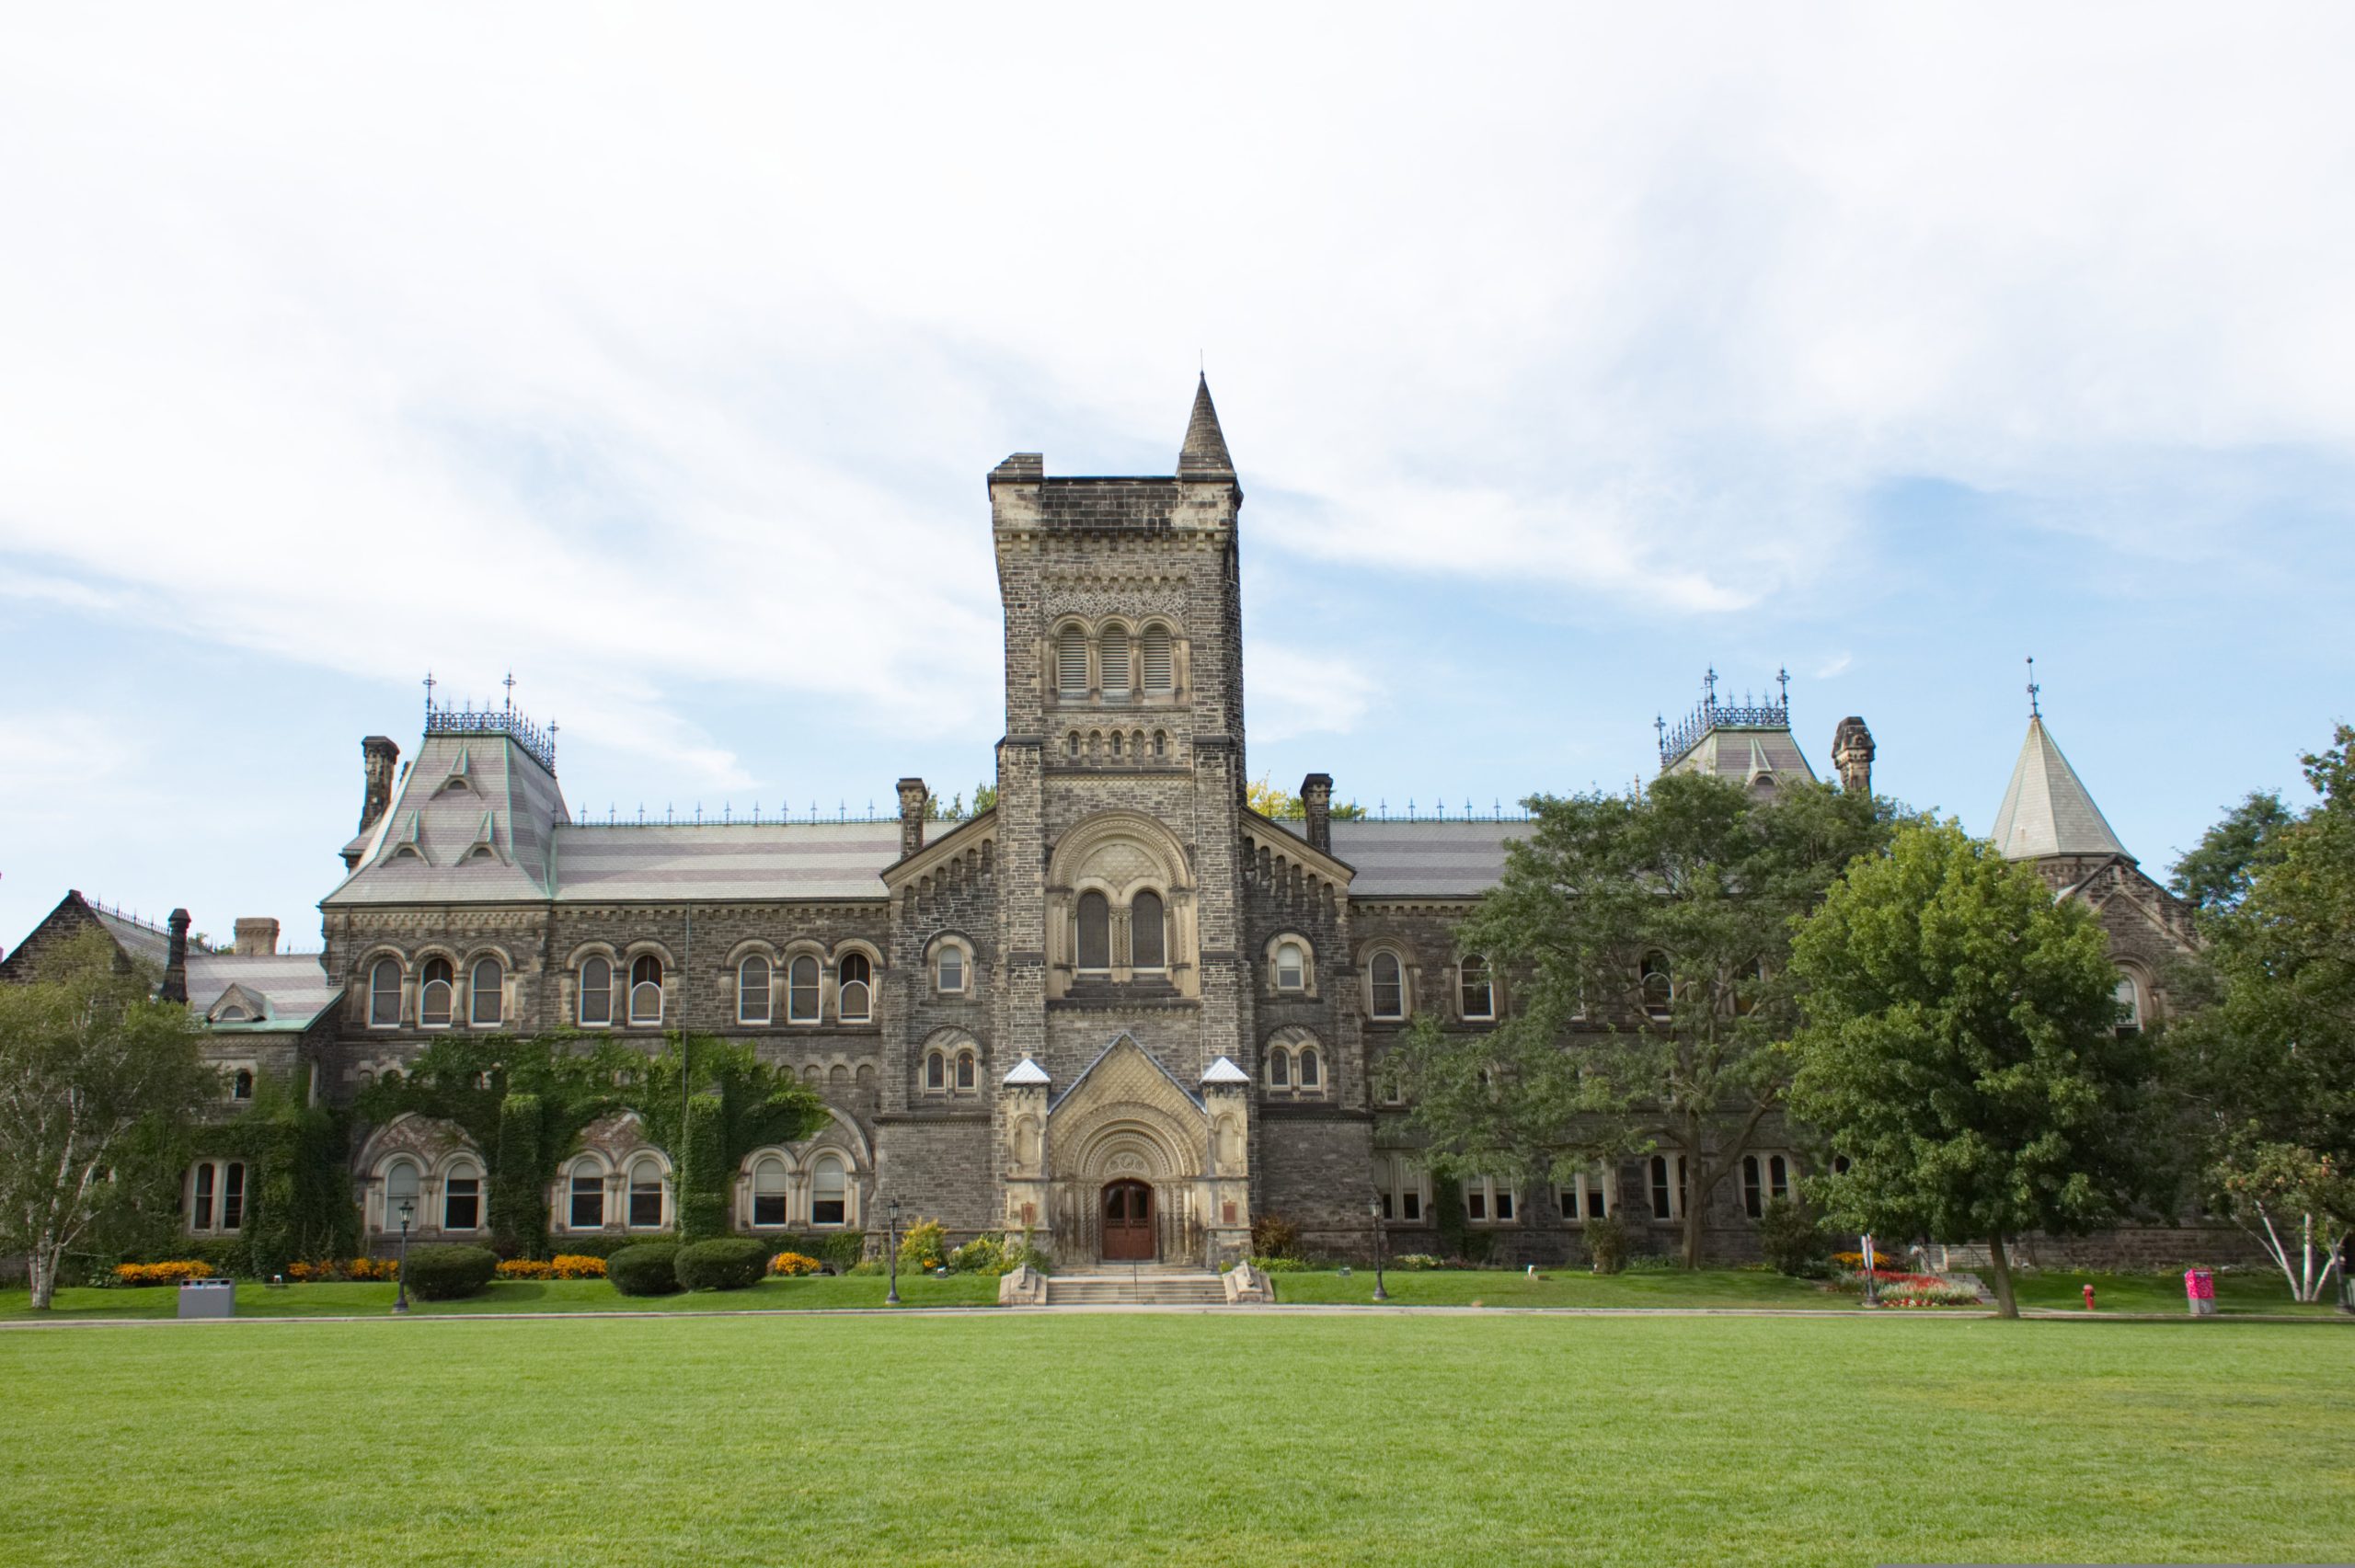 جامعة تورونتو